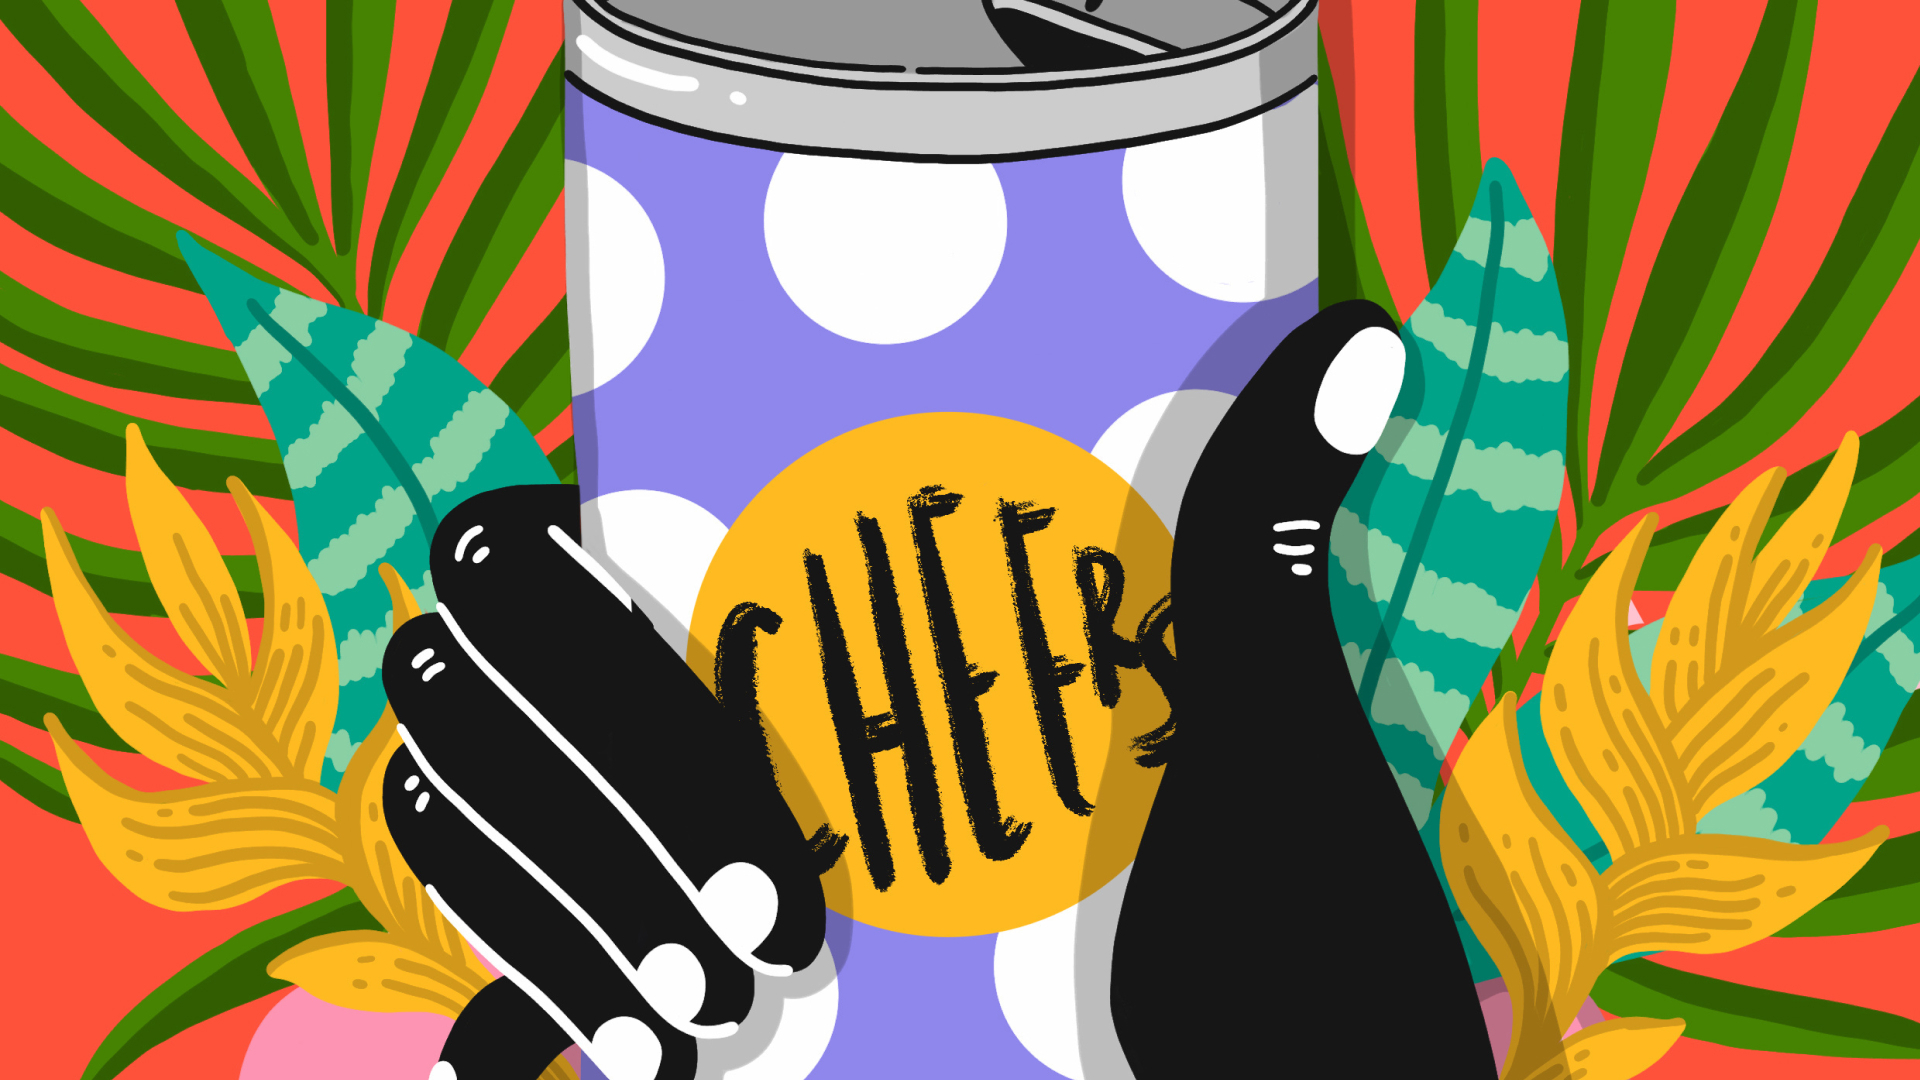 Ilustração colorida de uma mão segurando uma lata que diz "cheers".